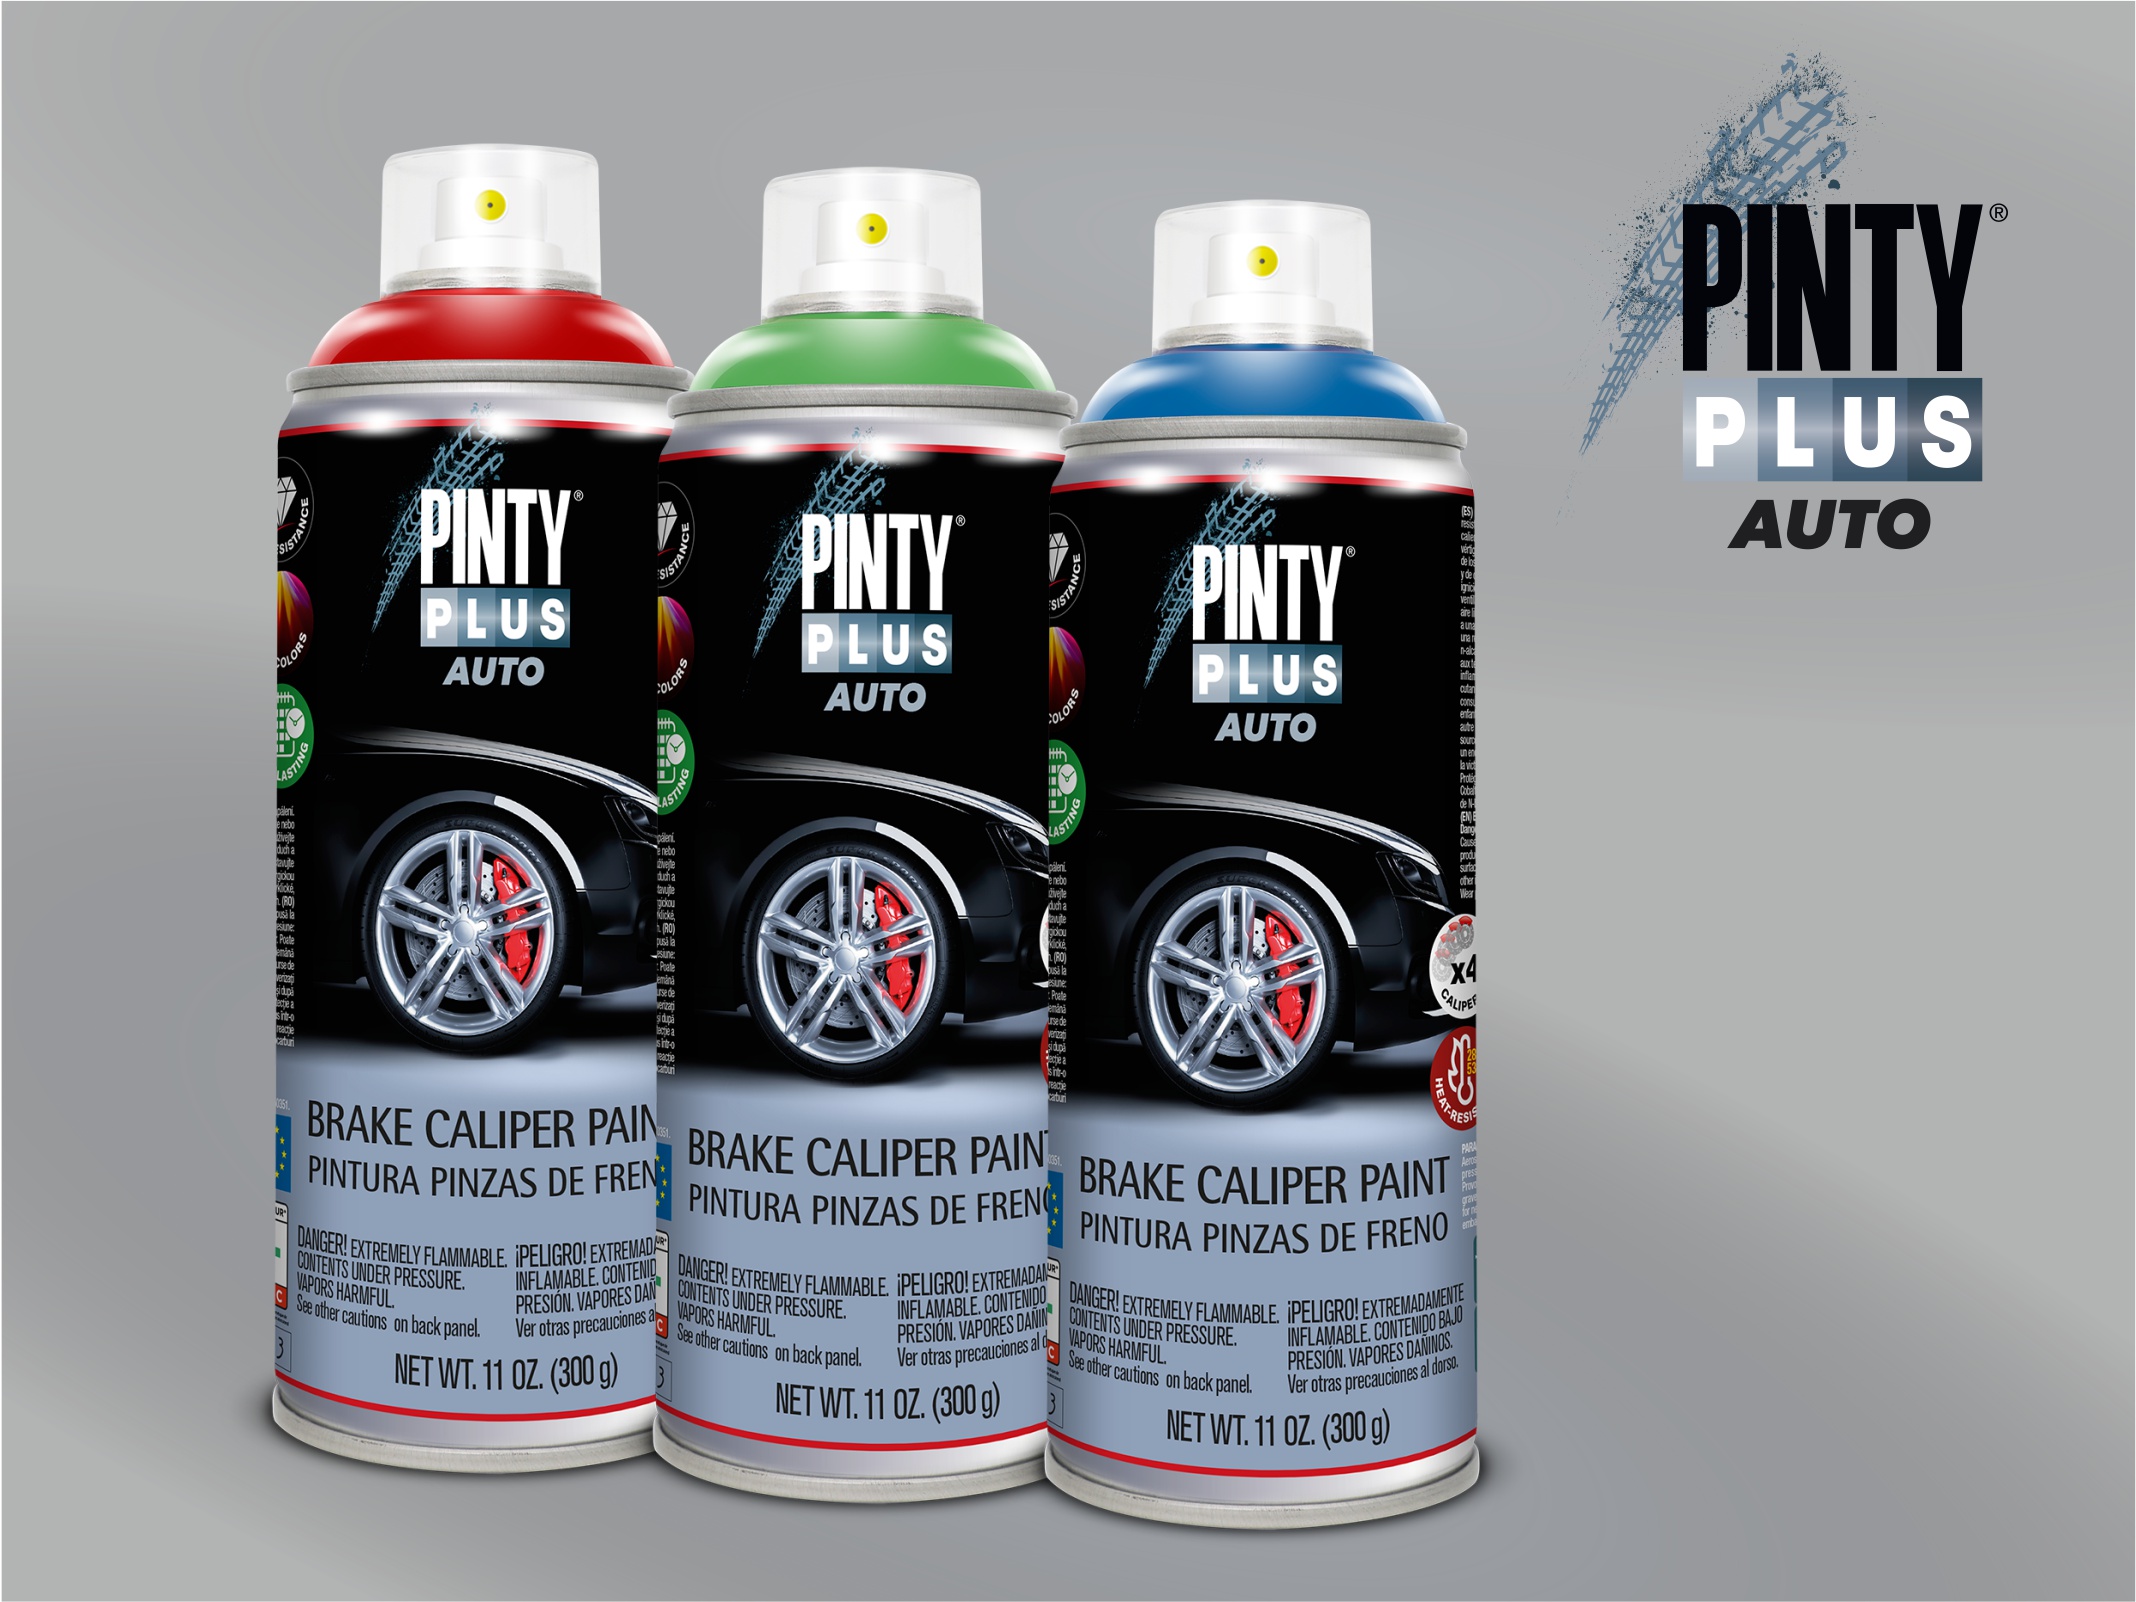 PintyPlus AUTO Brake Caliper Paint farba do zacisków hamulcowych